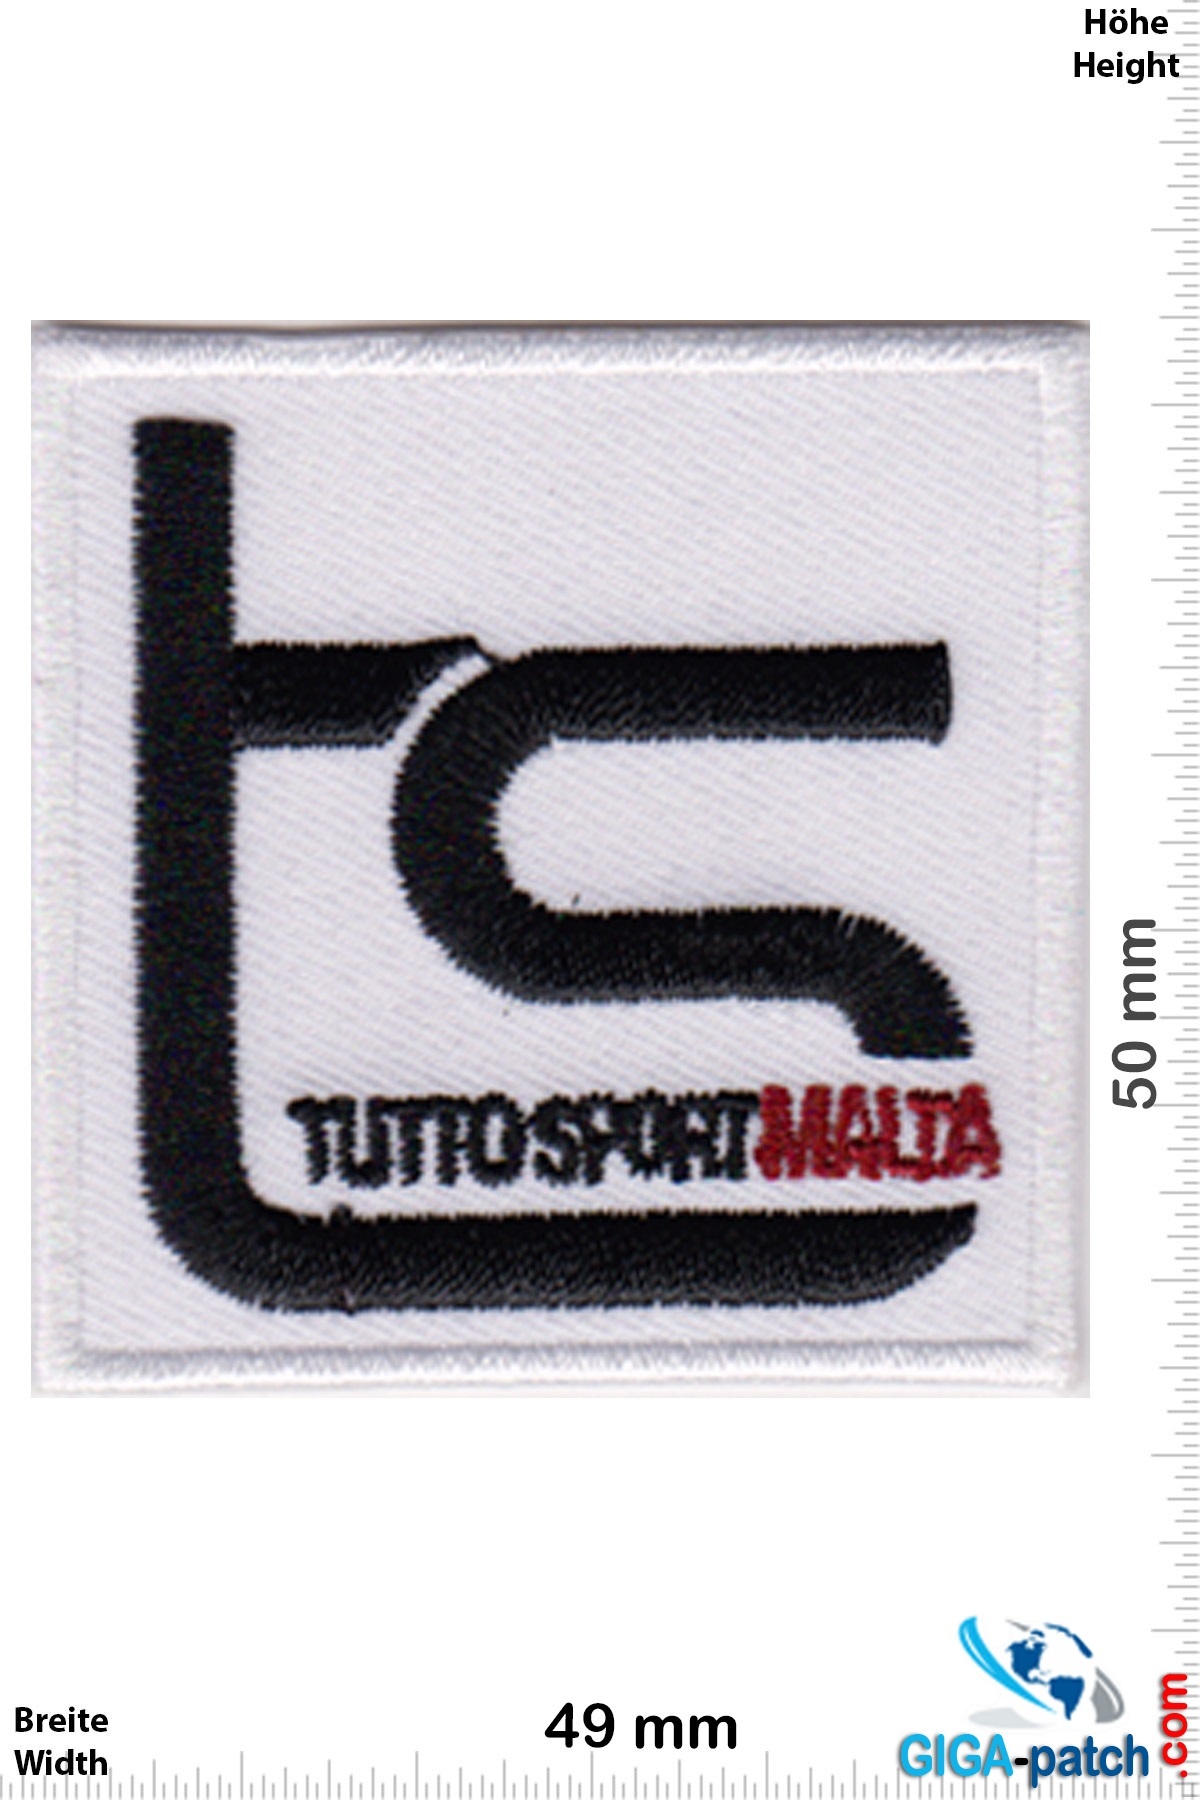 Tuttosport Malta